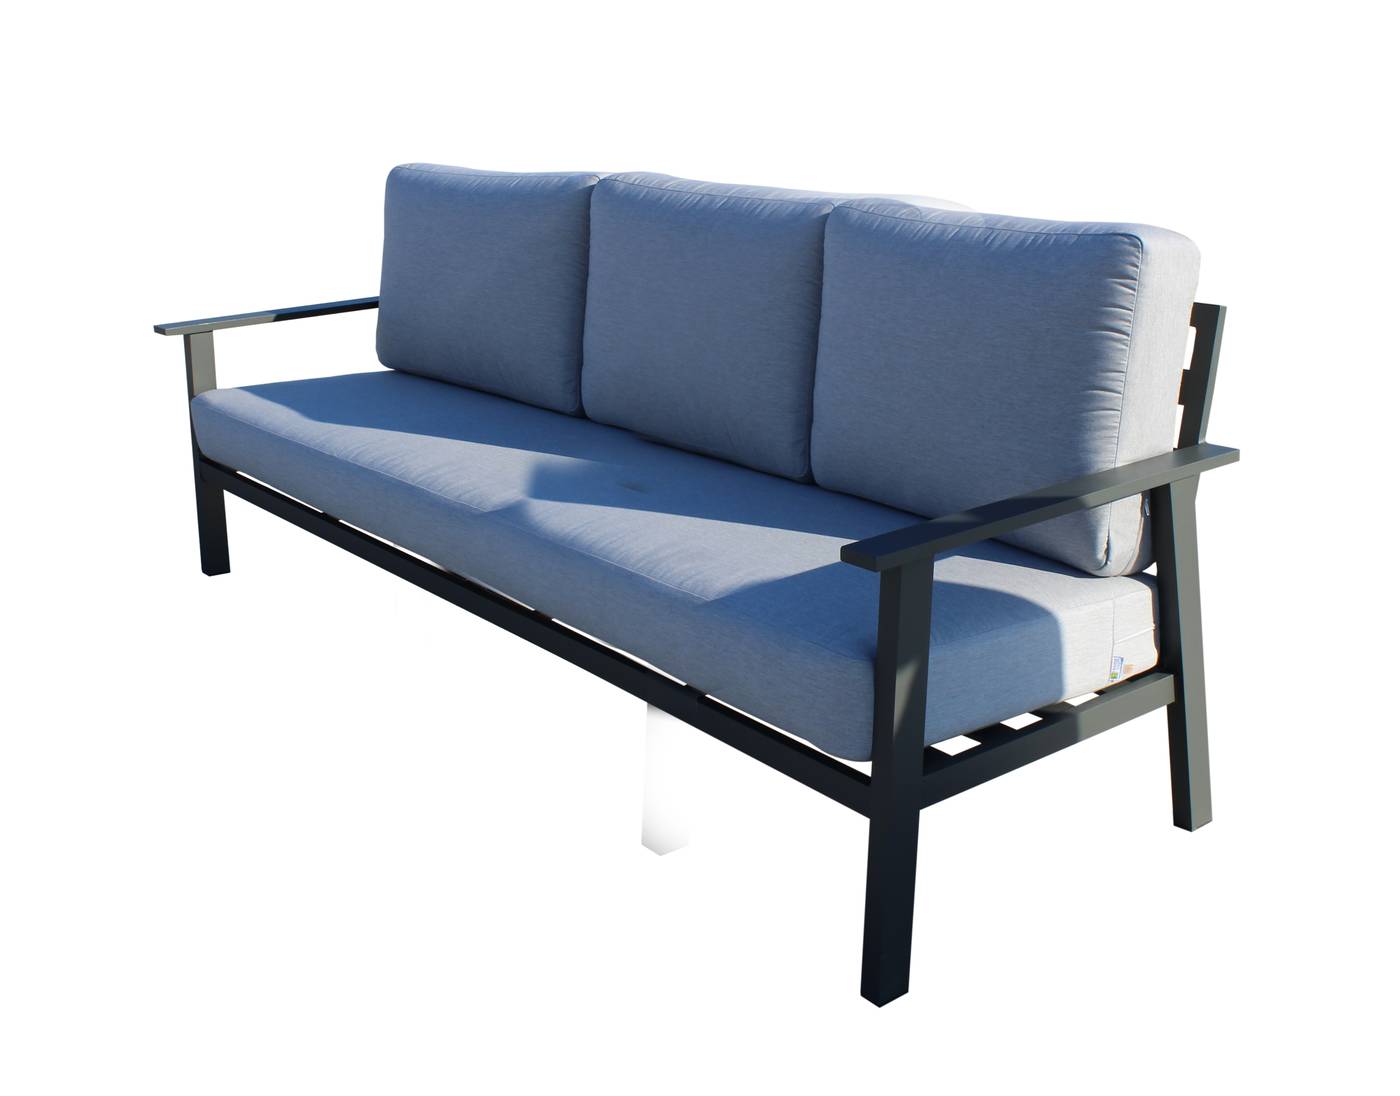 Sofá relax lujo 3 plazas. Fabricado de aluminio en color blanco o antracita.